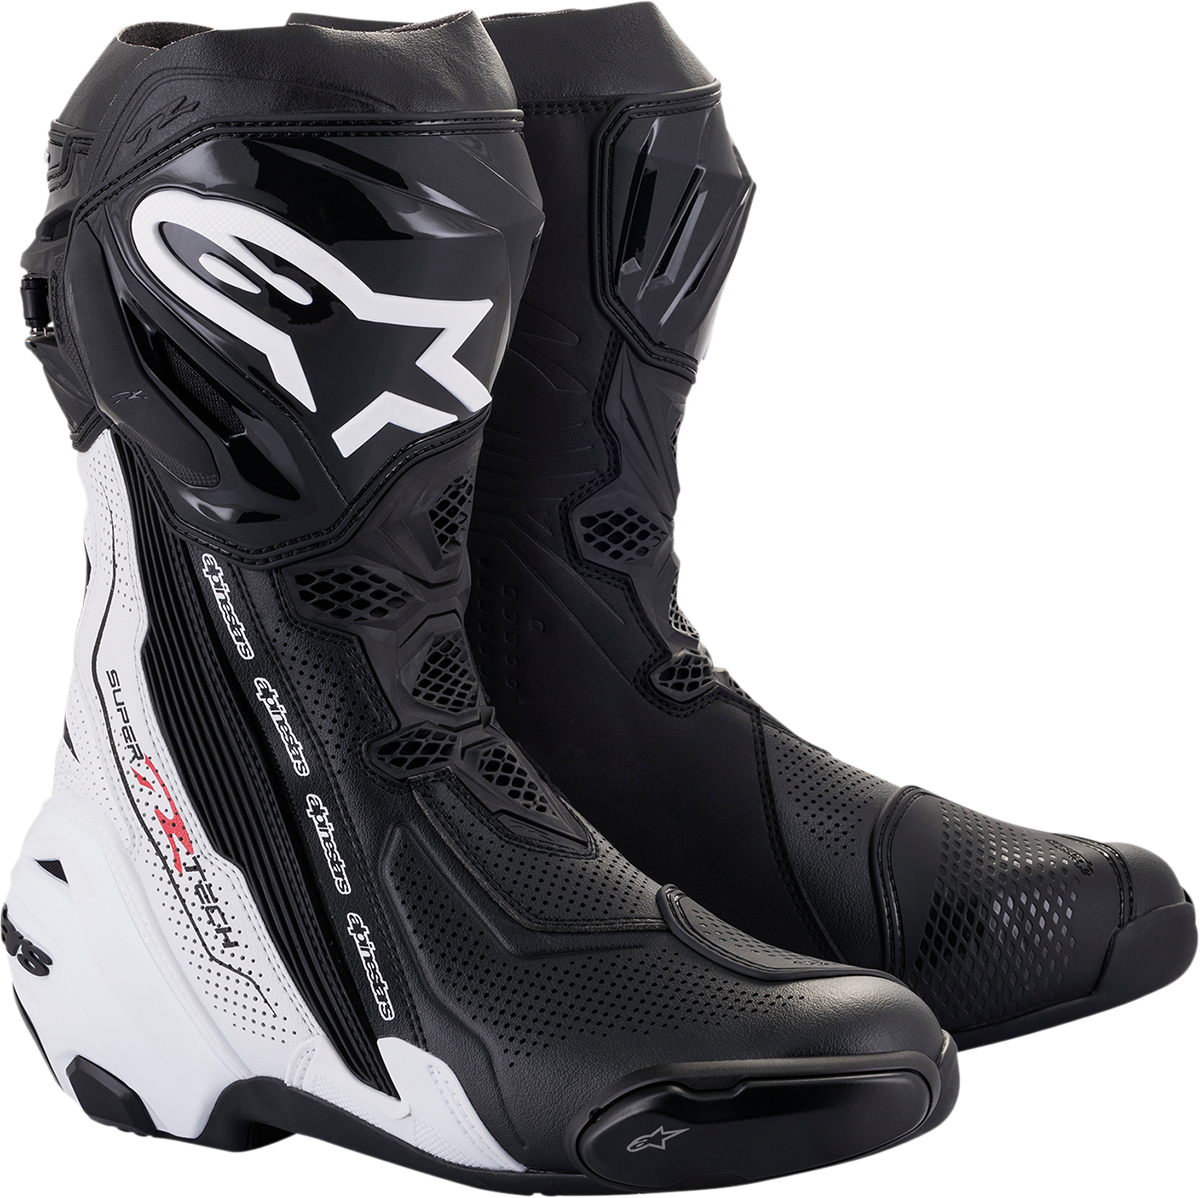 ALPINESTARS Supertech V Boots - Black/White - US 6.5 / EU 40 2220121-12-40